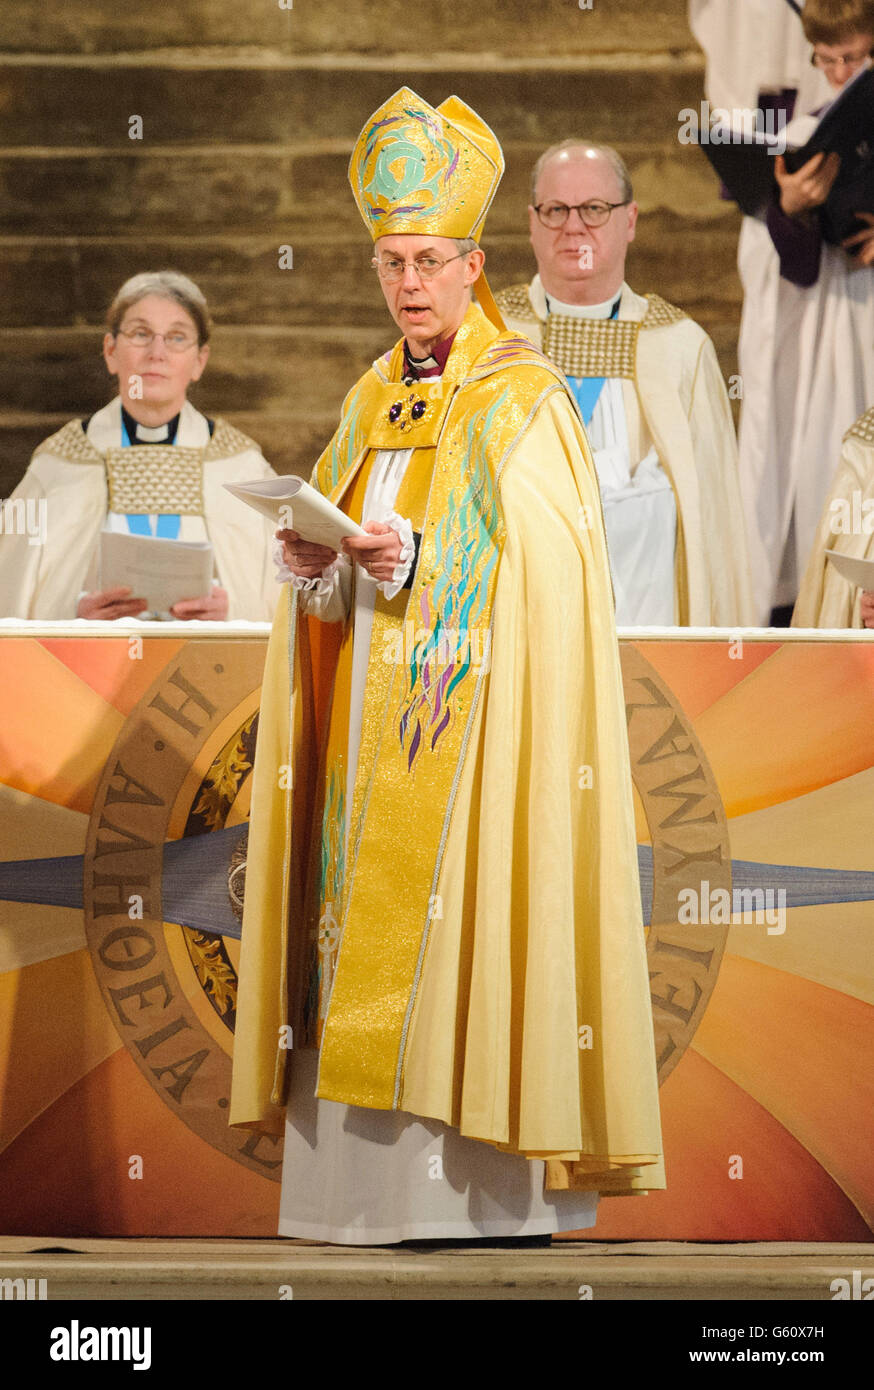 L'Archevêque de Canterbury le Révérend Justin Welby est entronisé lors d'un service à l'intérieur de la cathédrale de Canterbury, dans le Kent. Banque D'Images